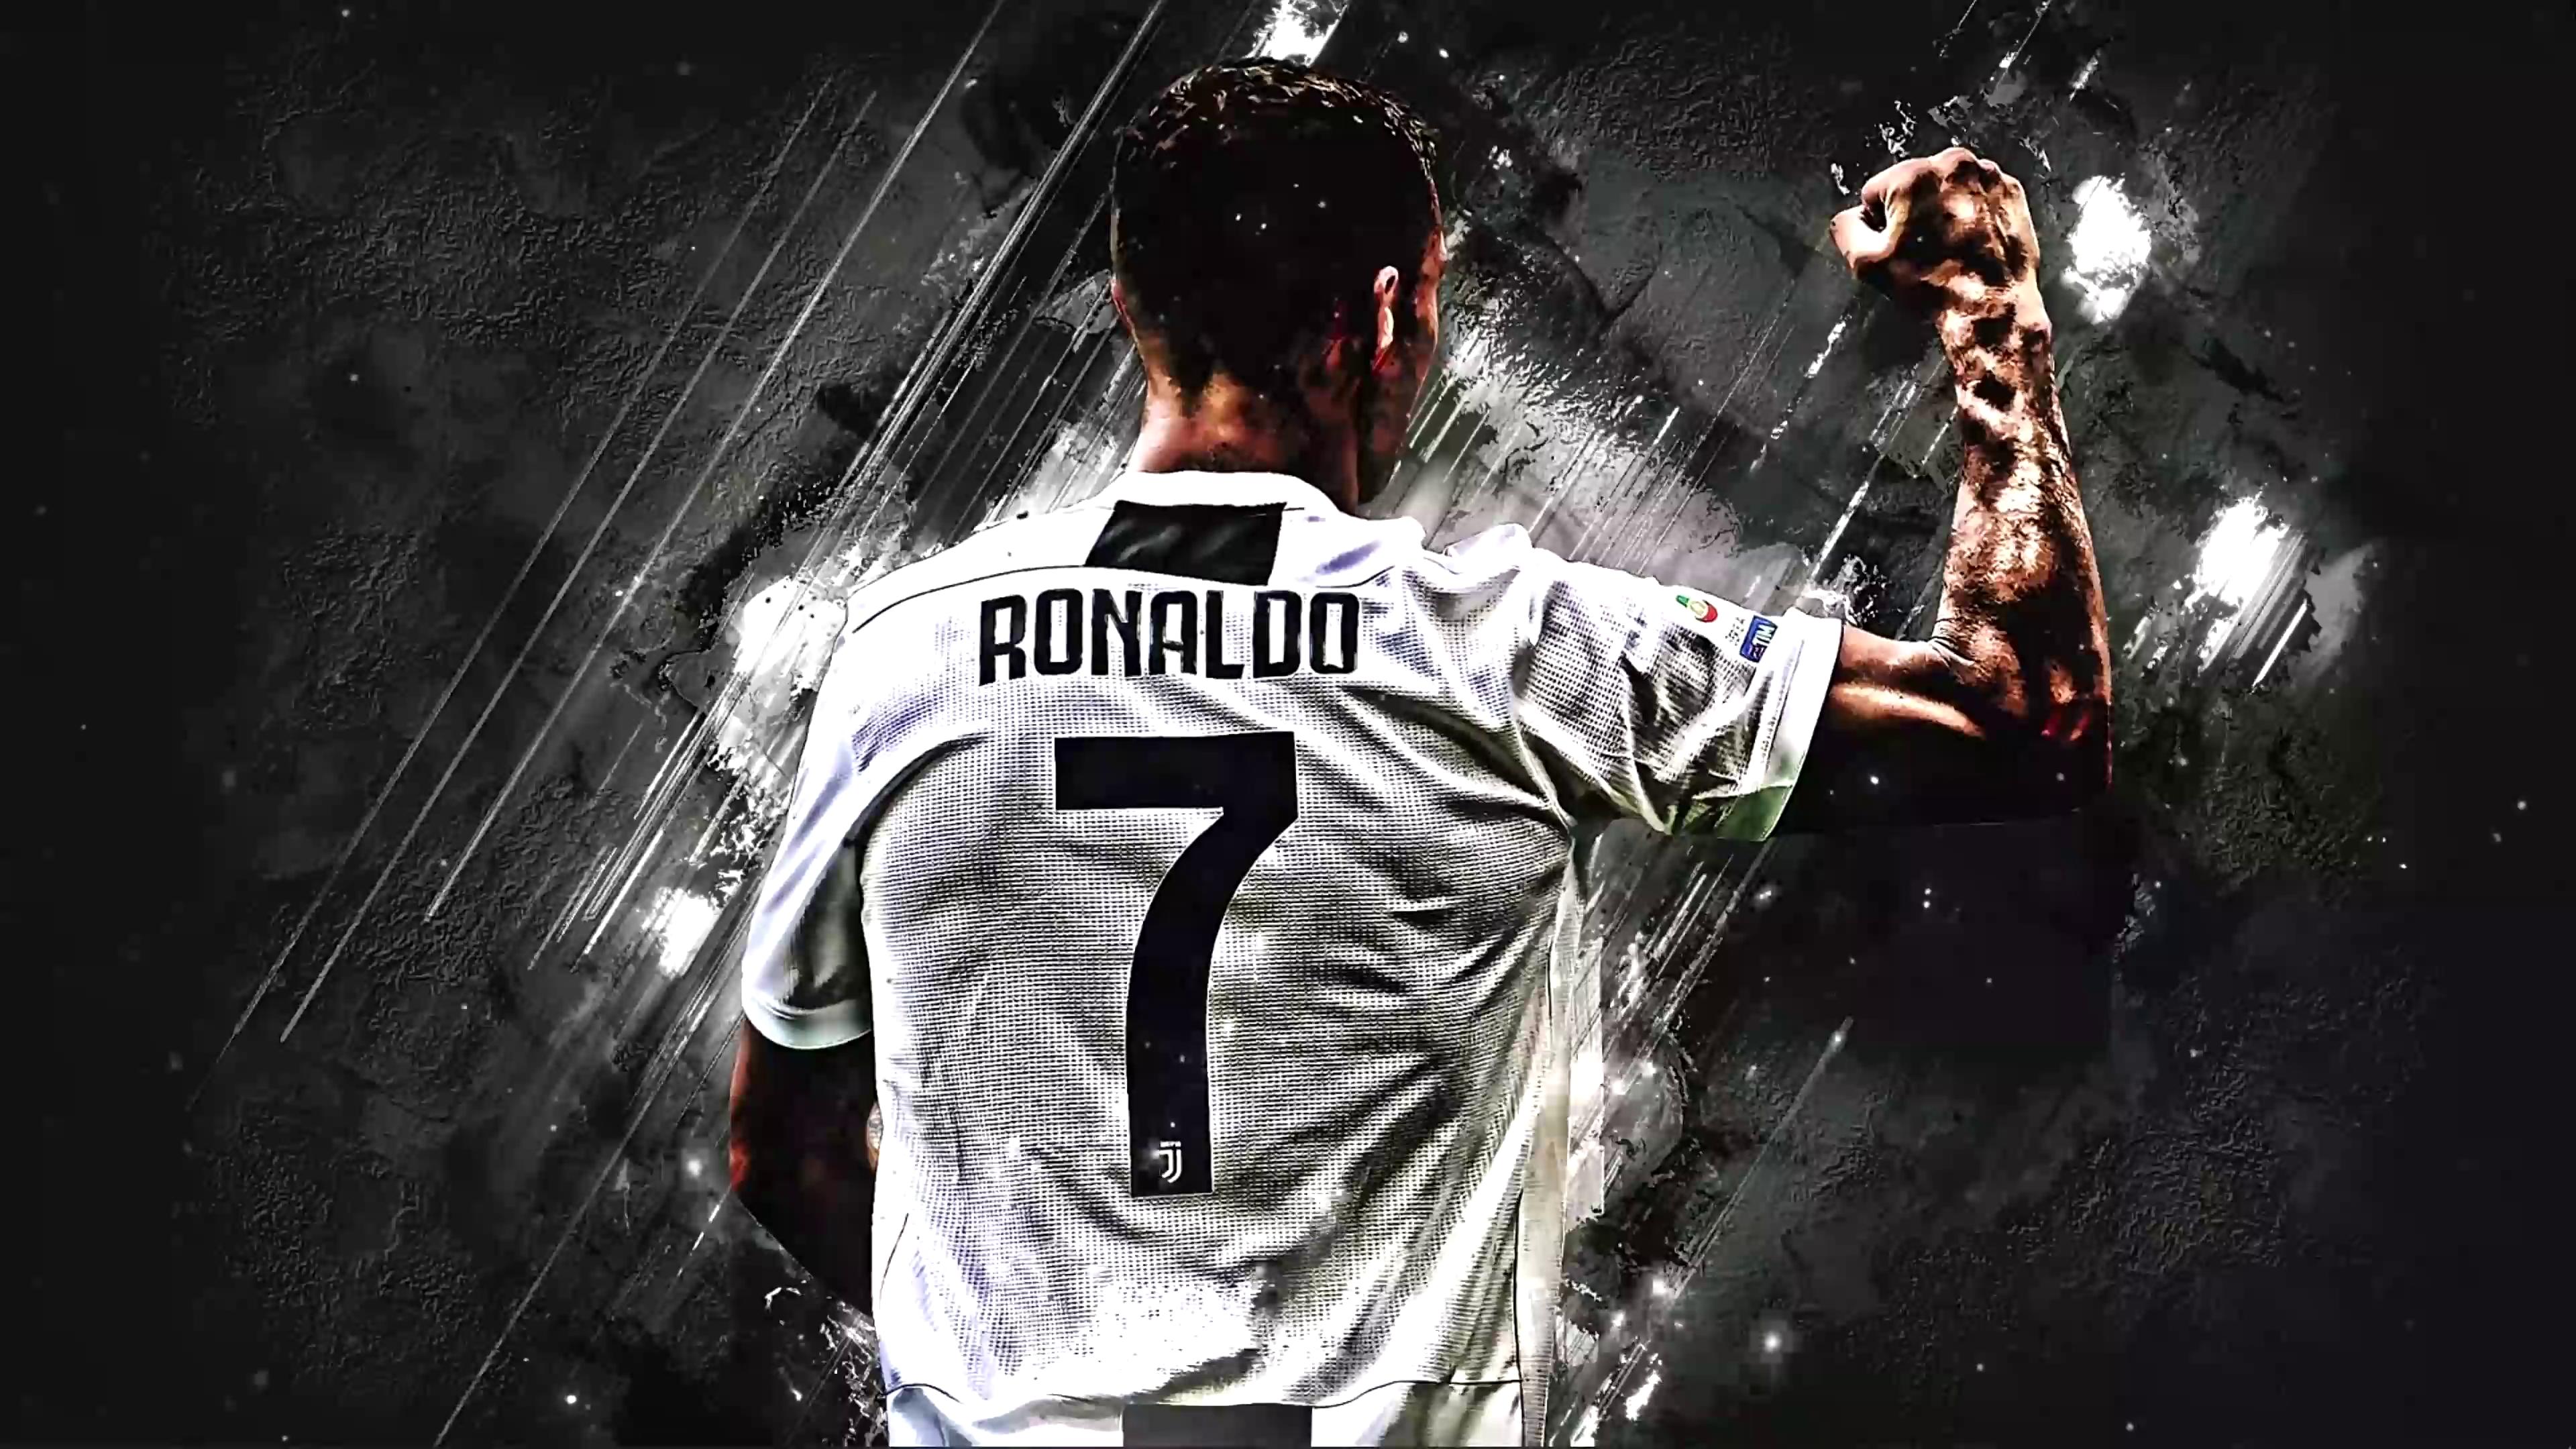 Cristiano Ronaldo Live Wallpaper - free download